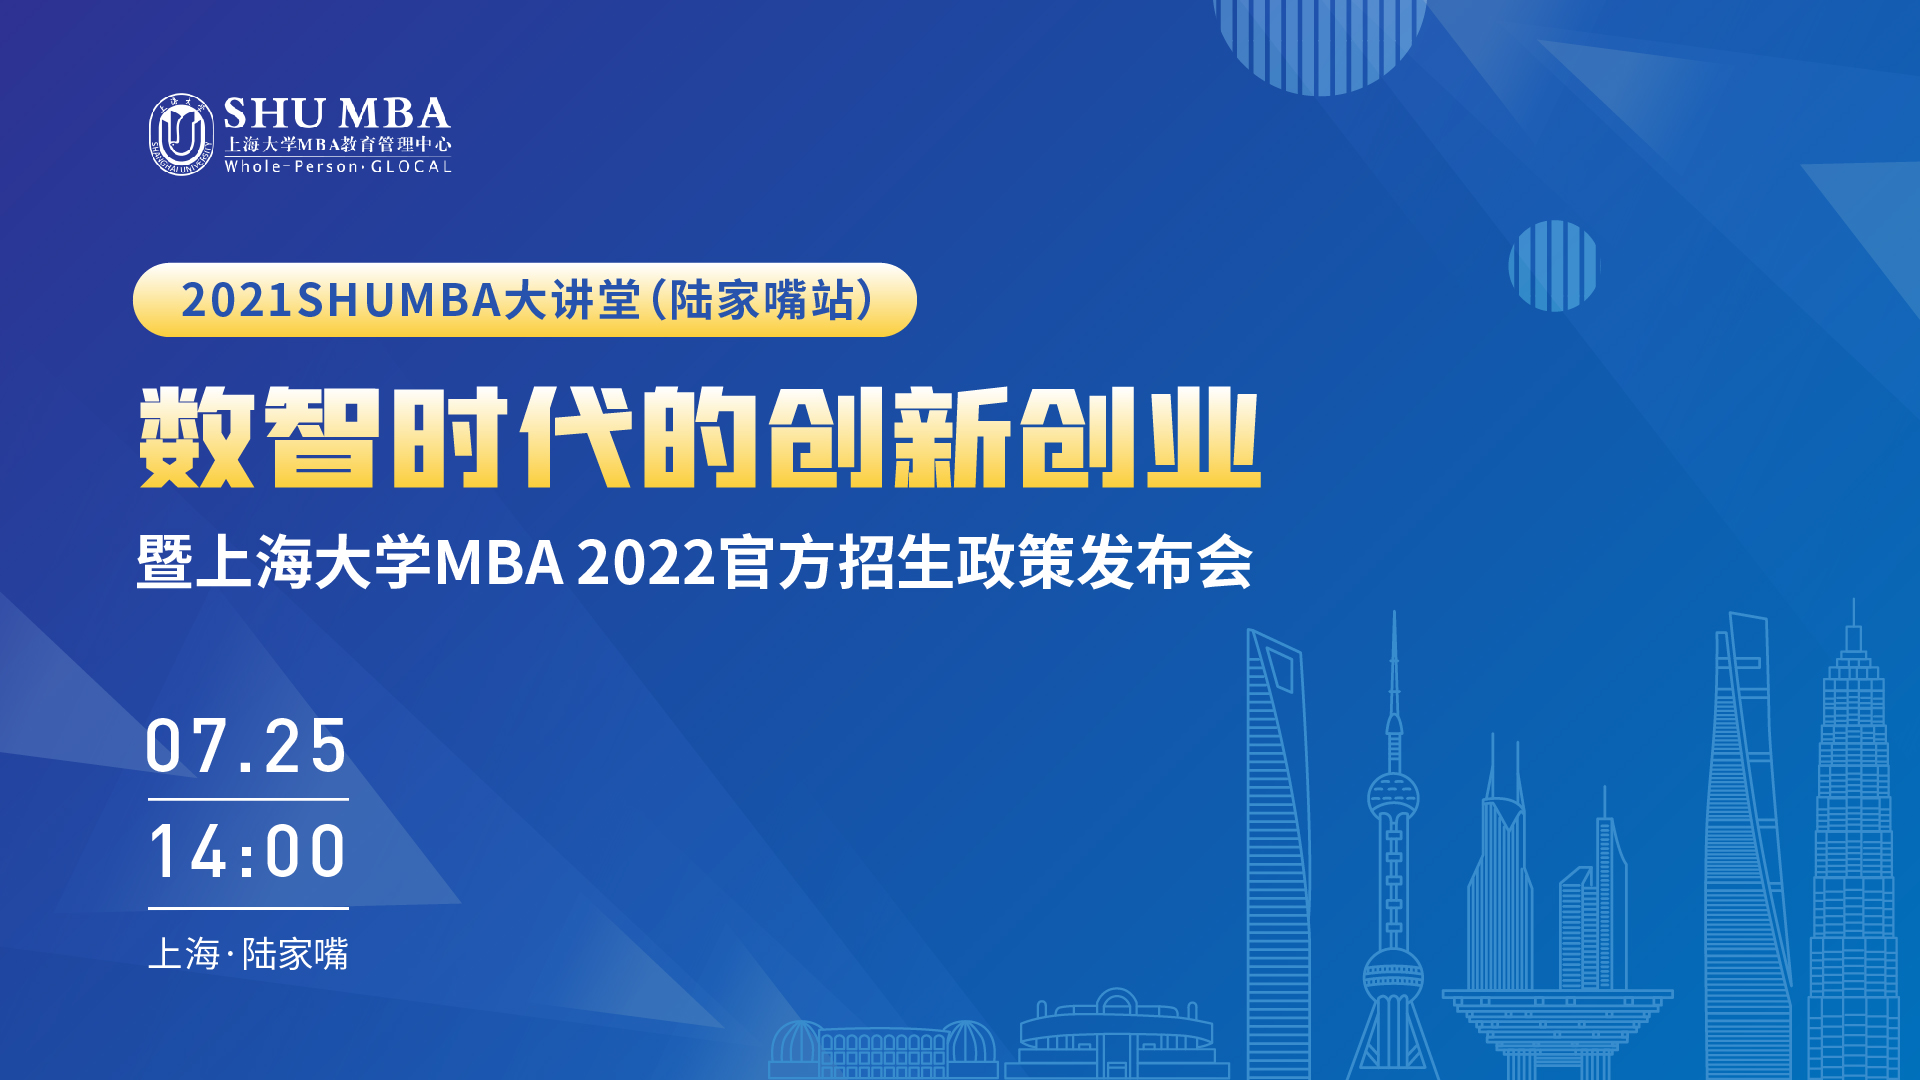 上海大学MBA官方招生政策发布会 | 数智时代创新创业tips大放送！！